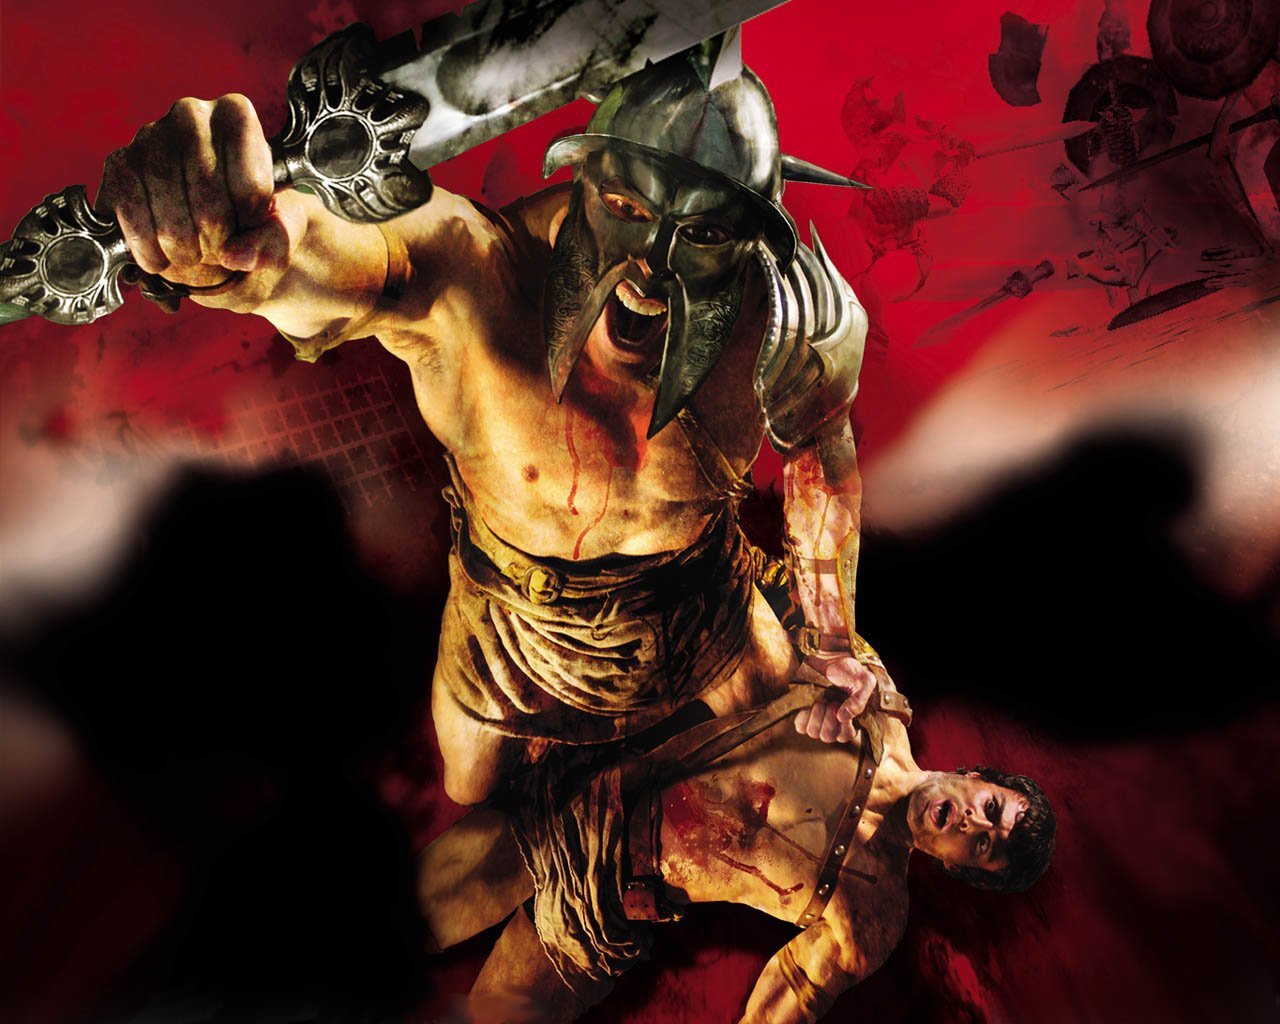 Gladiator_-_Sword_of_Vengeance,_2003